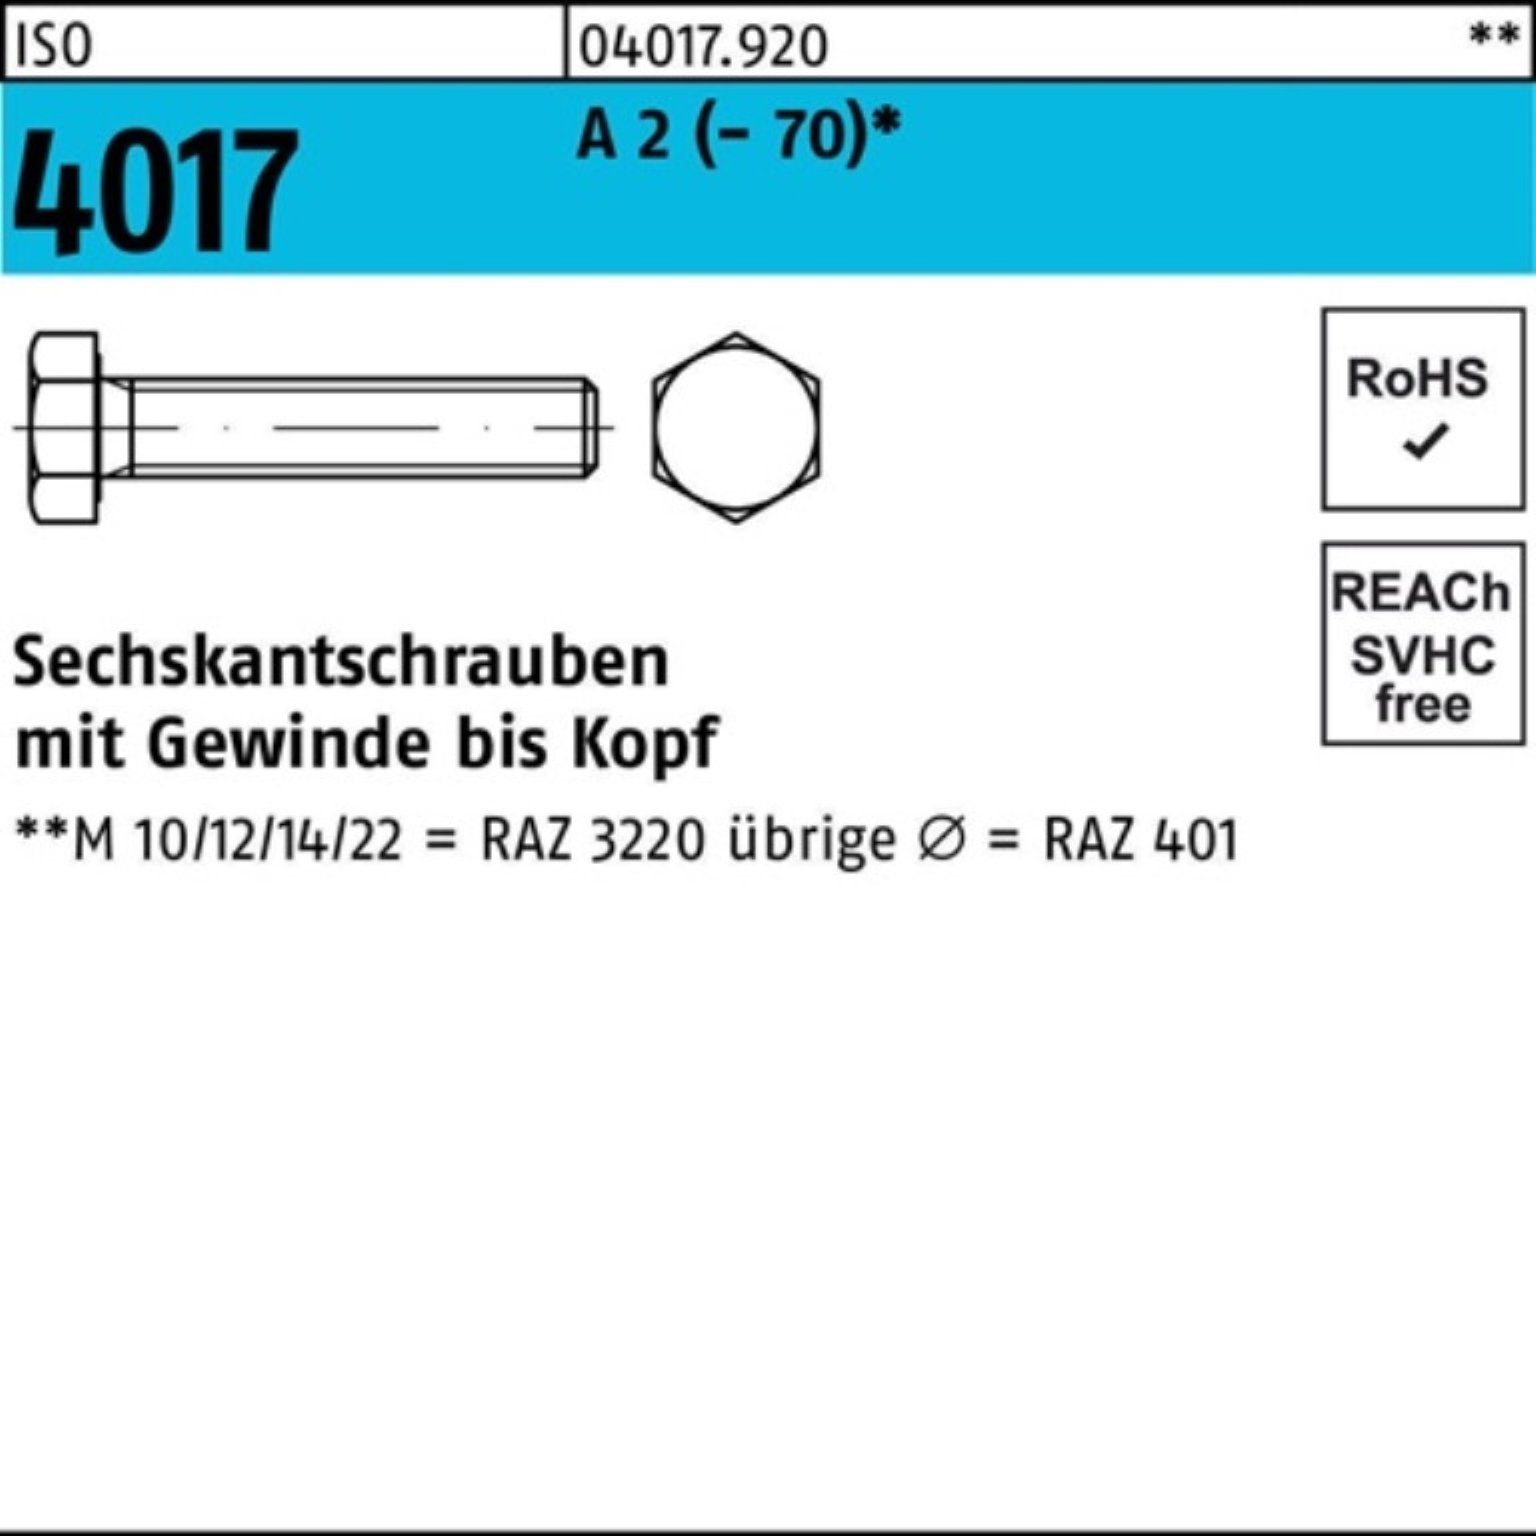 Bufab Sechskantschraube 100er 100 Stück M10x VG Sechskantschraube (70) A 55 Pack 2 4017 ISO